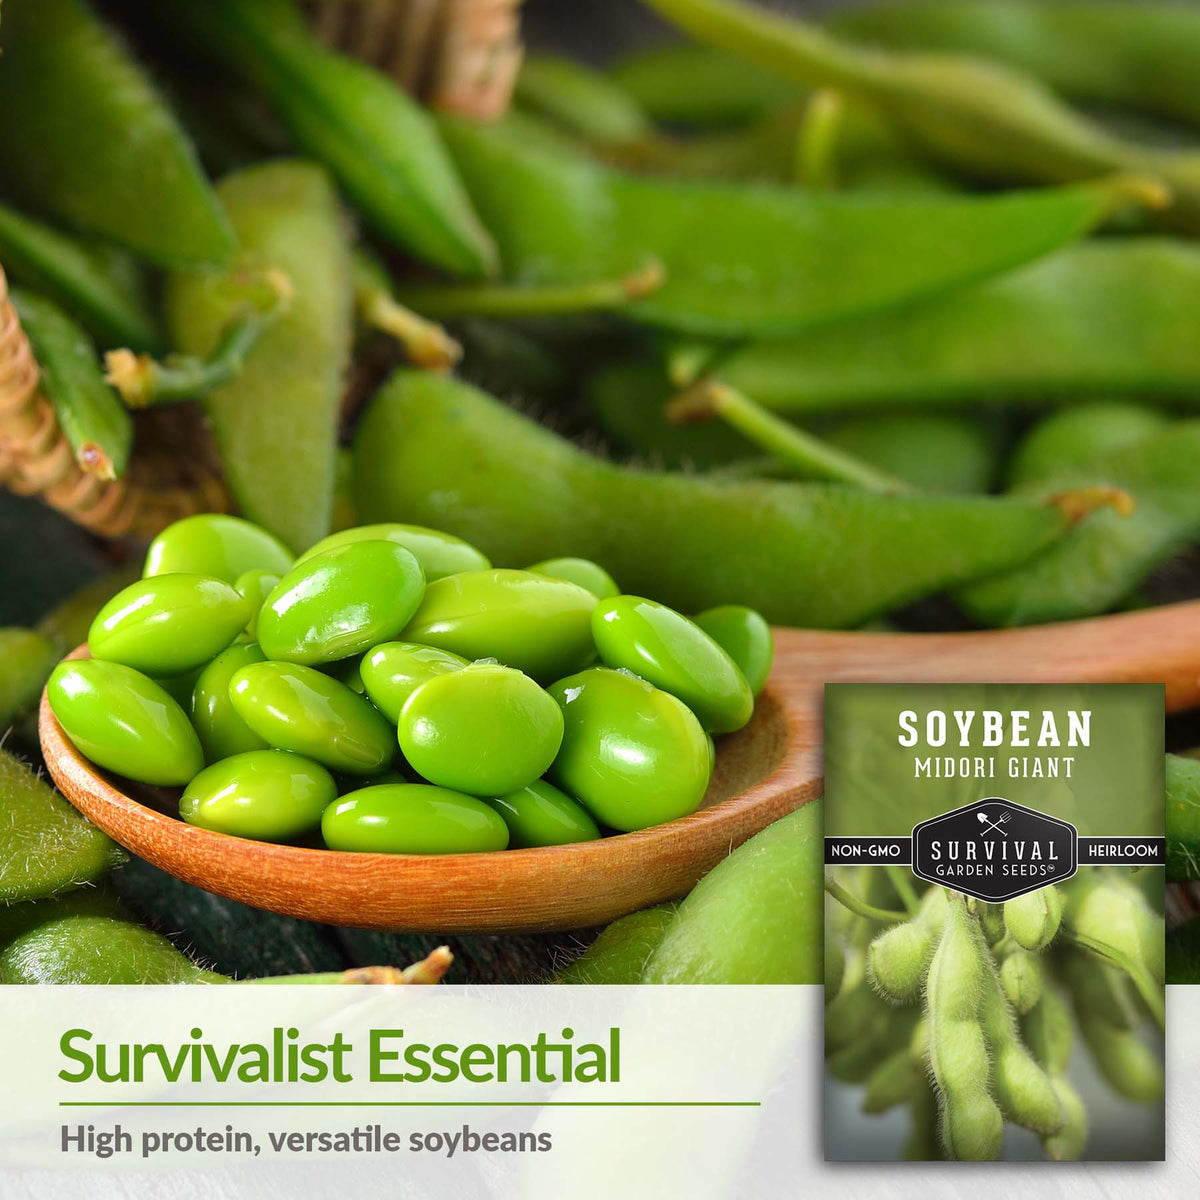 Survivalist essential high protein, versatile soybeans